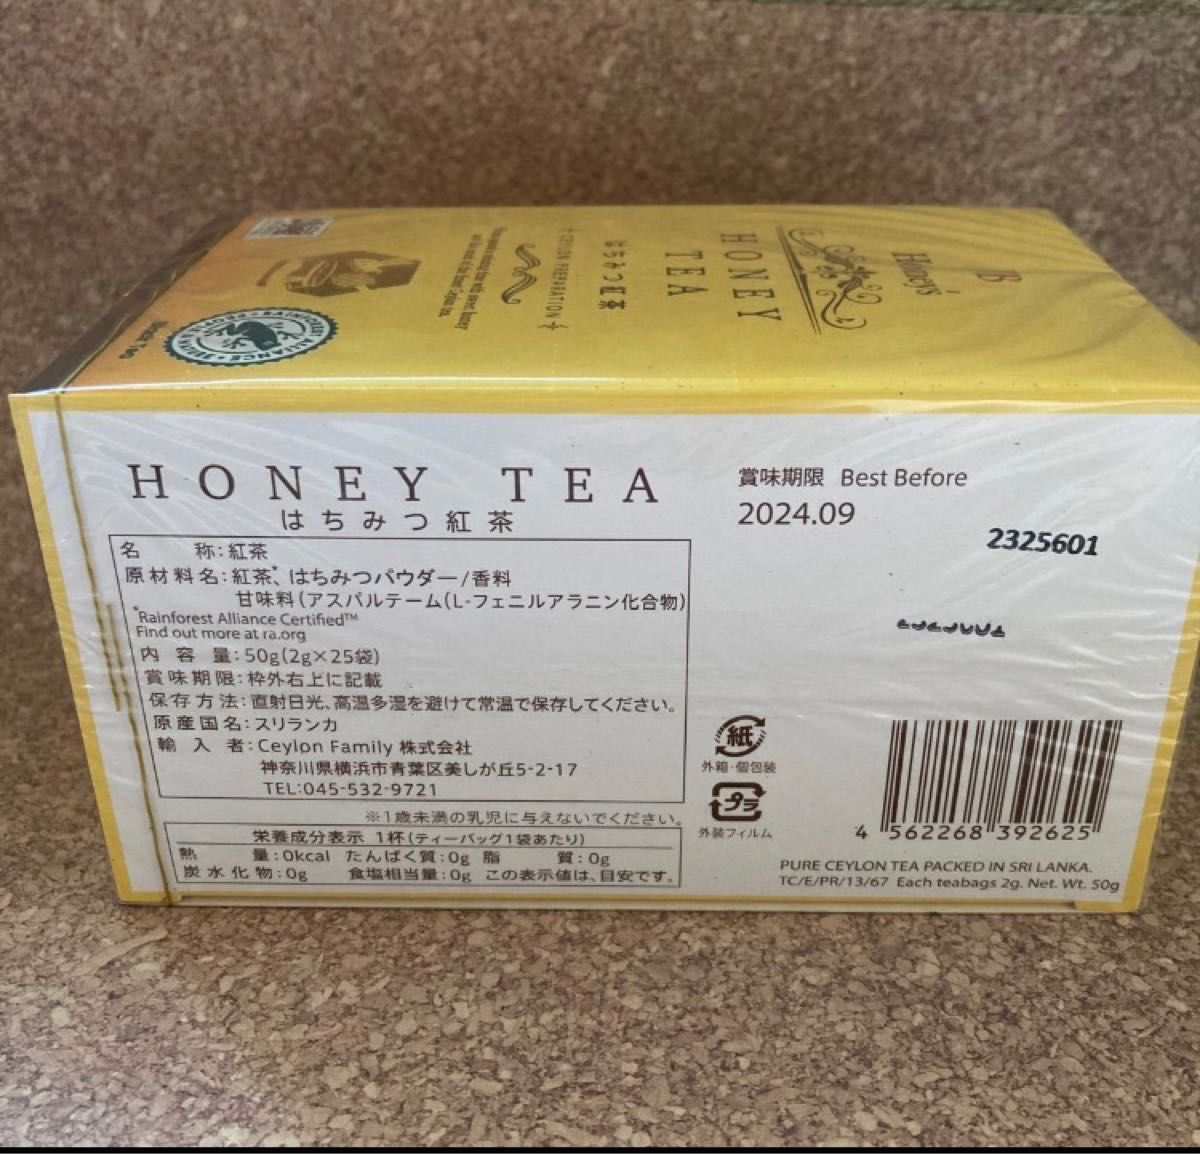 ハチミツ紅茶1箱50g(2g×25）5箱セット 賞味期限24.09 アウトレット